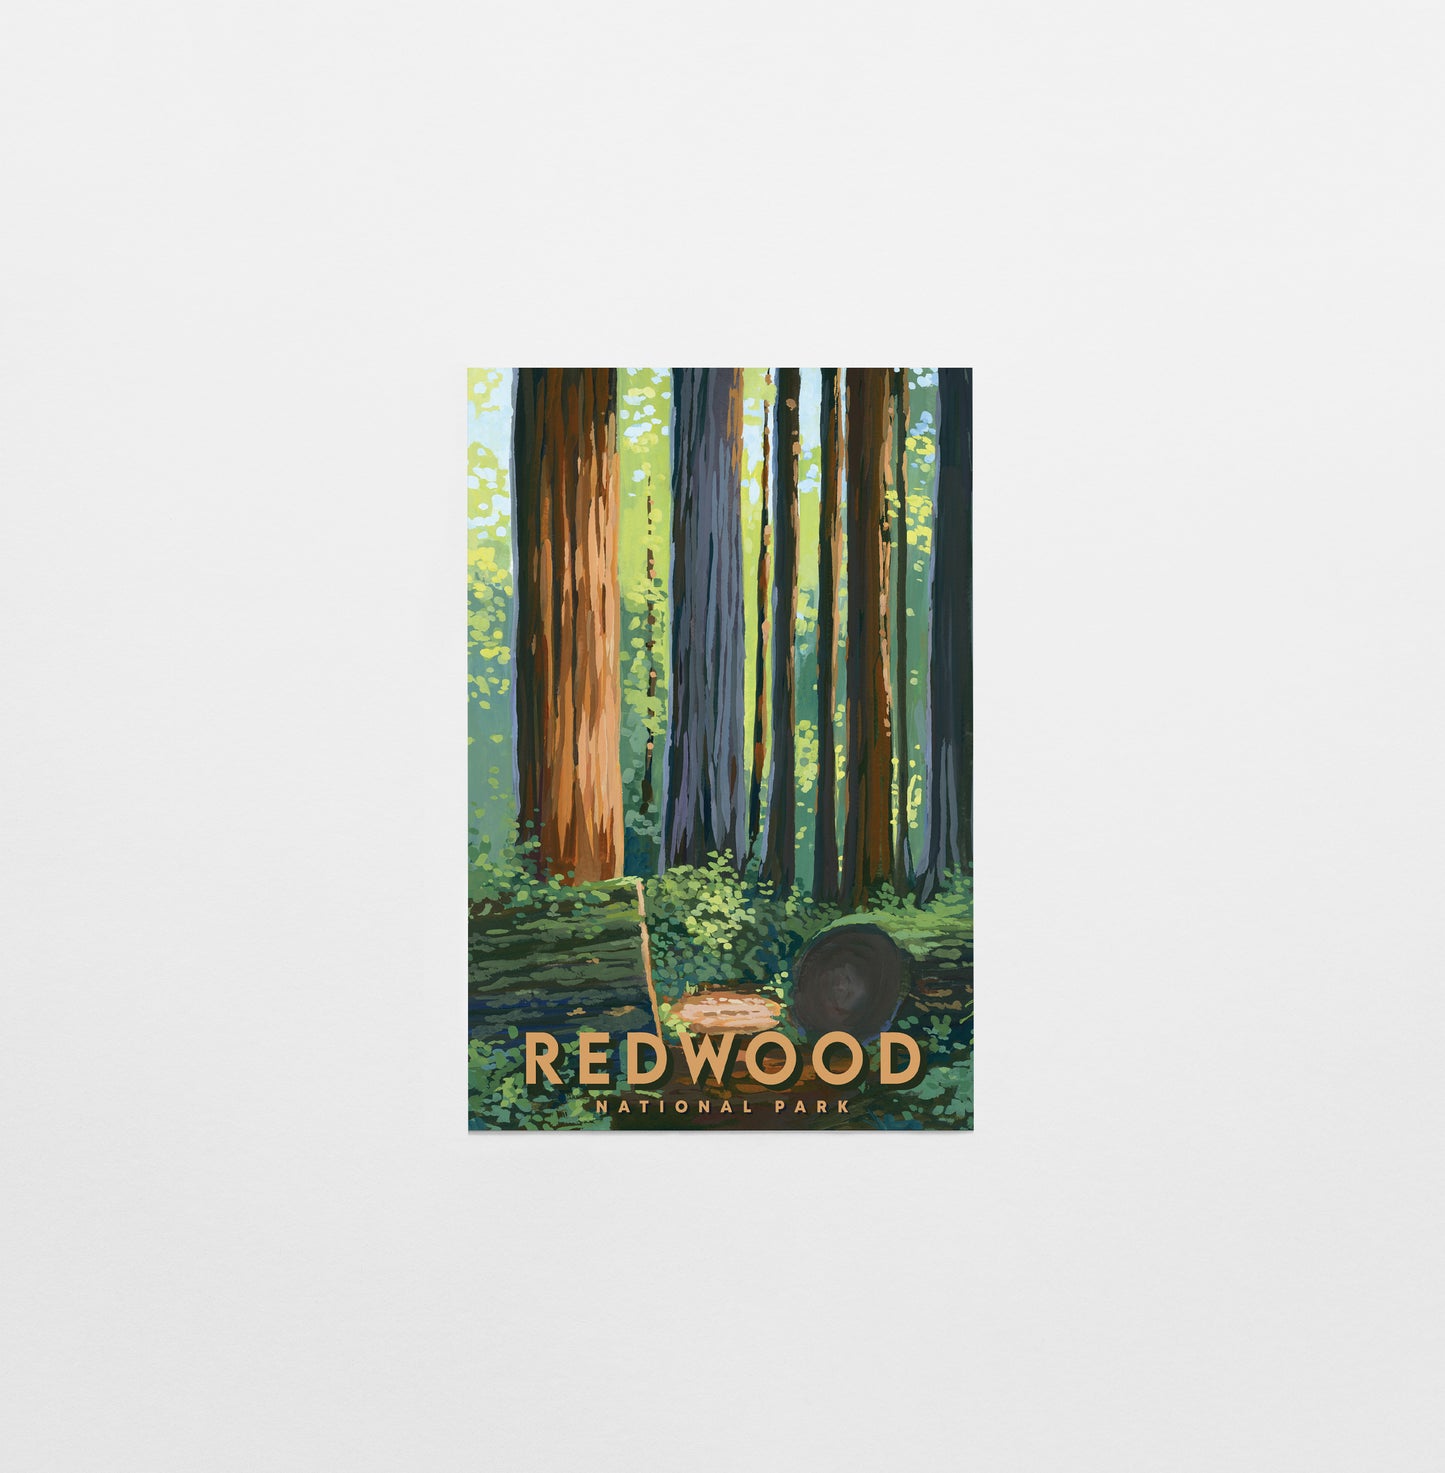 'Redwood' National Park Travel Poster Postcard